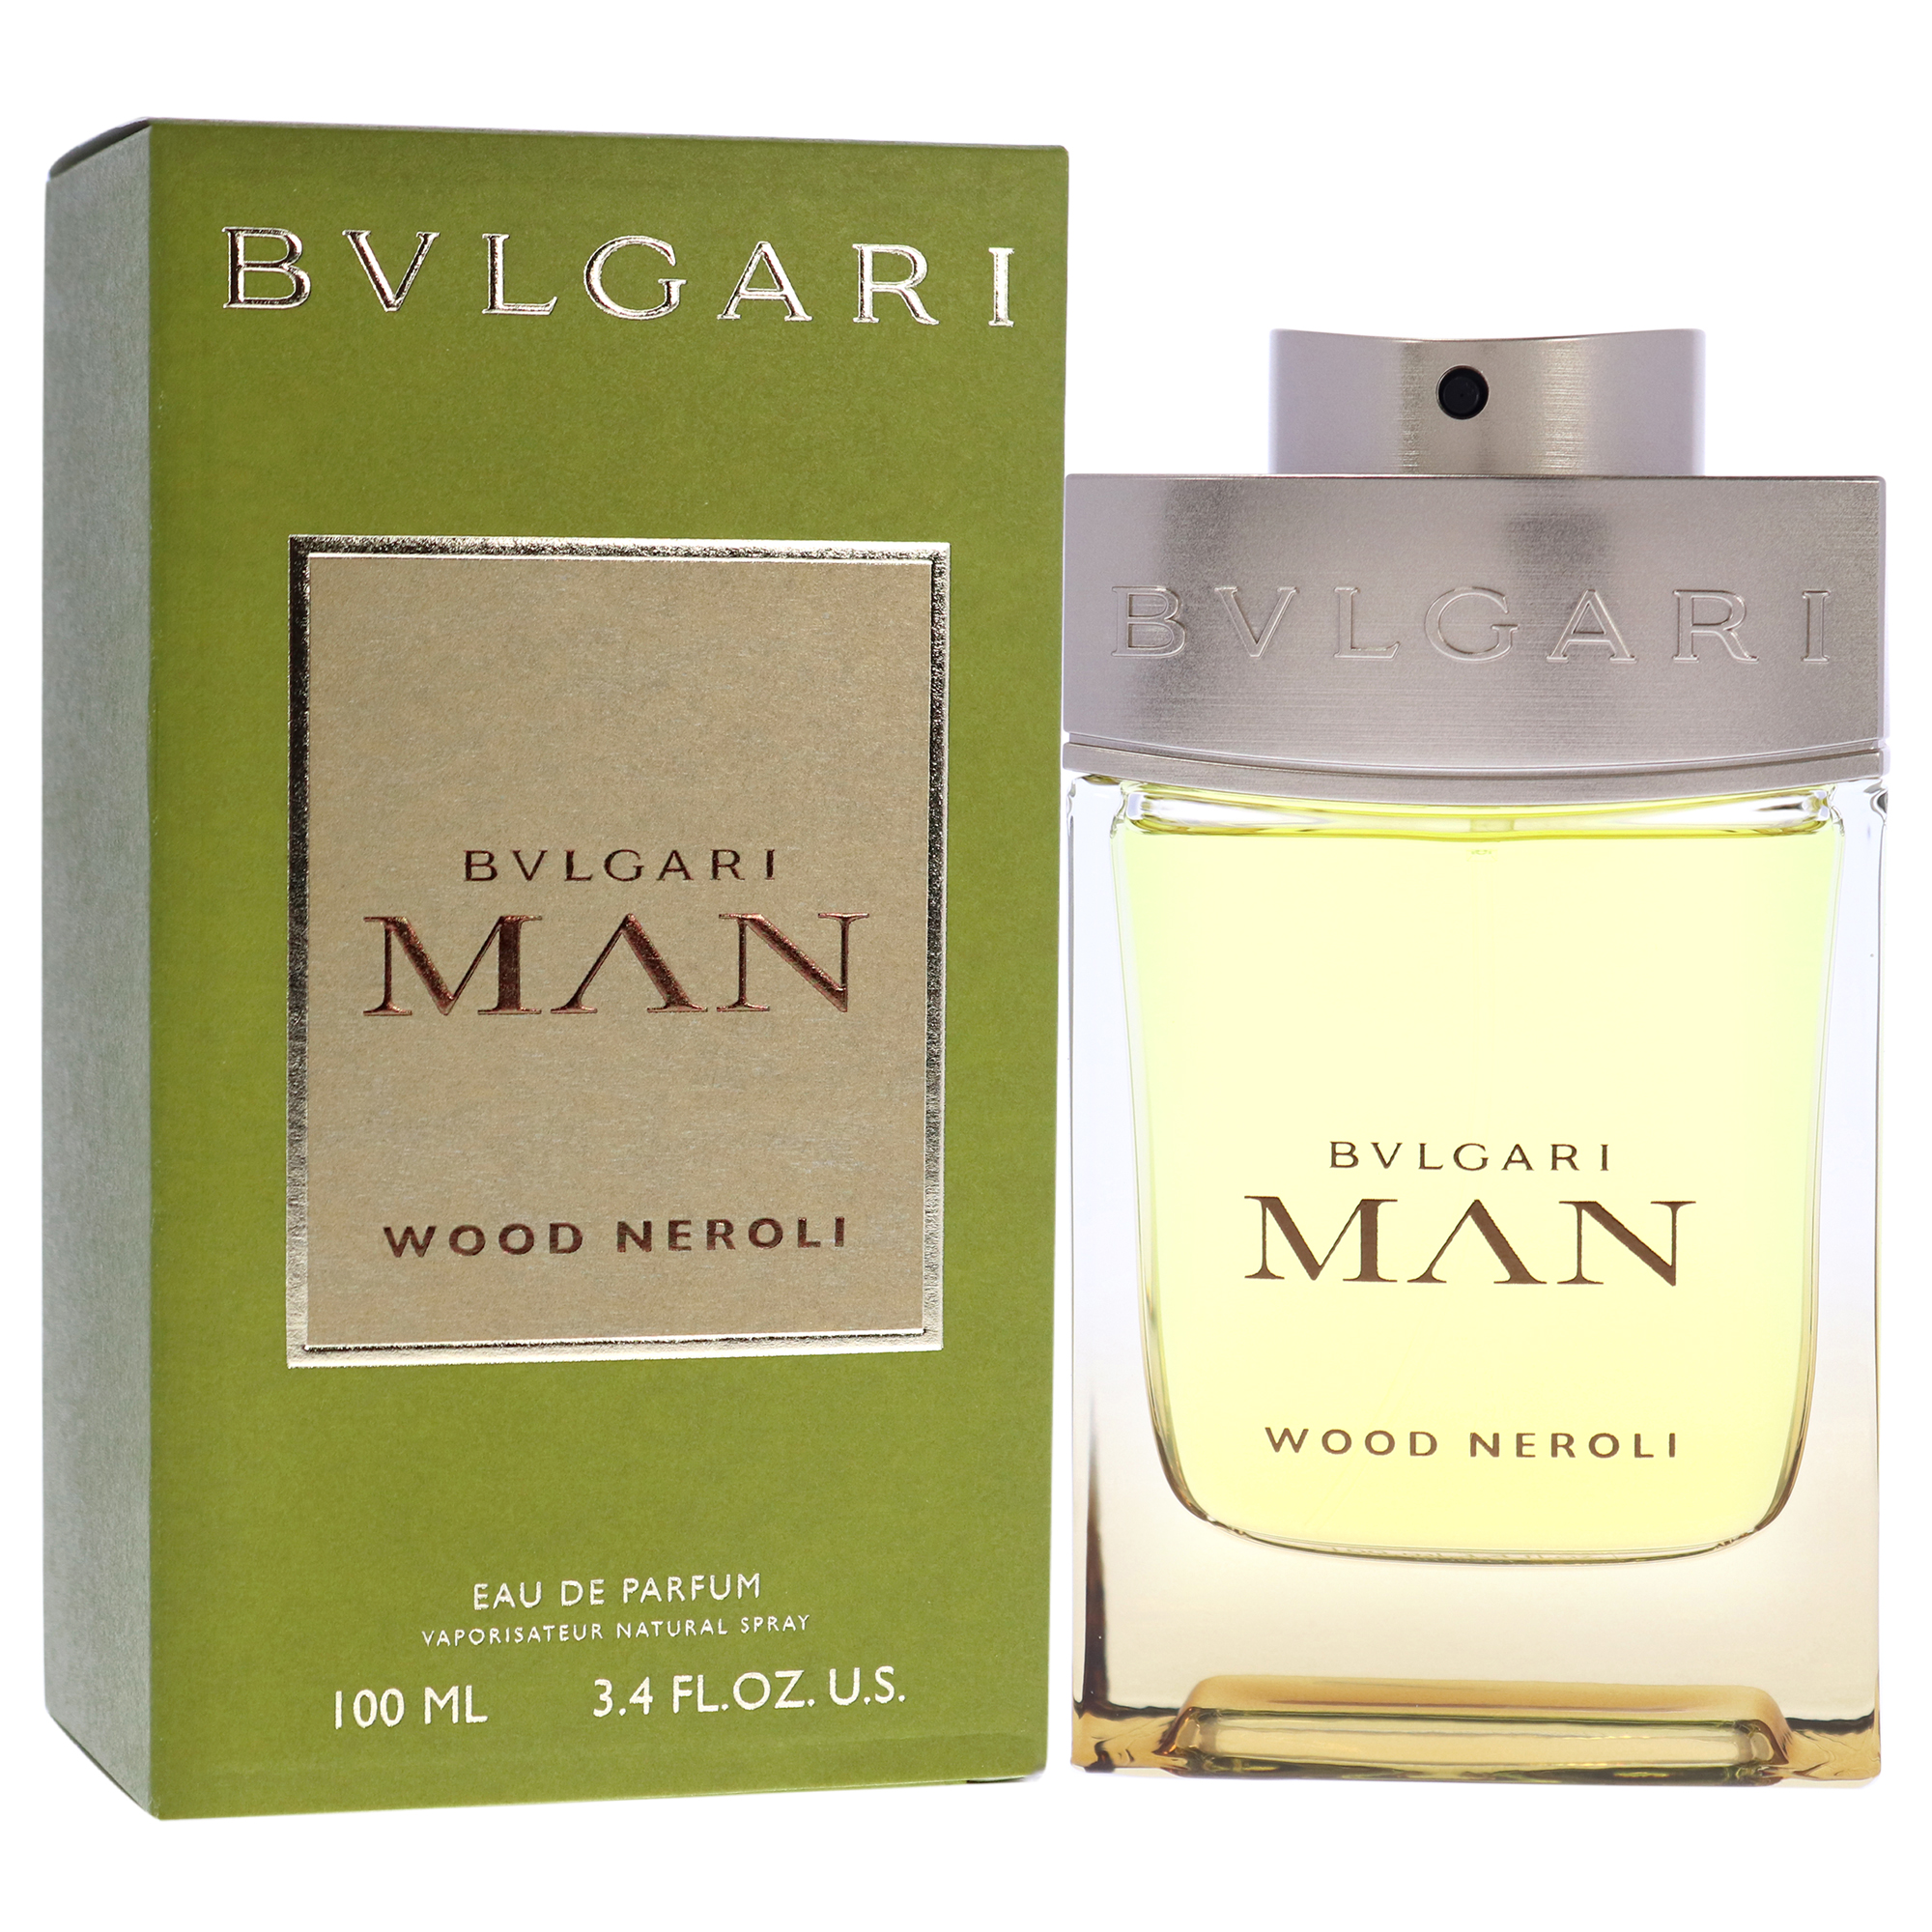 Bvlgari 242651 3.4 oz Men Wood Neroli Eau De Parfum Spray